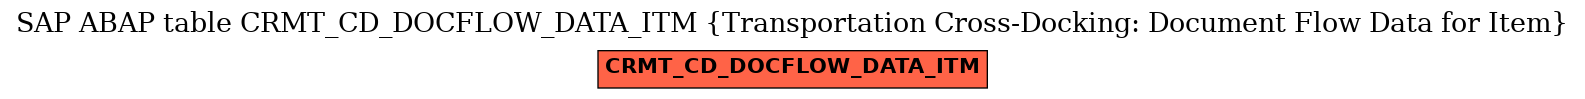 E-R Diagram for table CRMT_CD_DOCFLOW_DATA_ITM (Transportation Cross-Docking: Document Flow Data for Item)